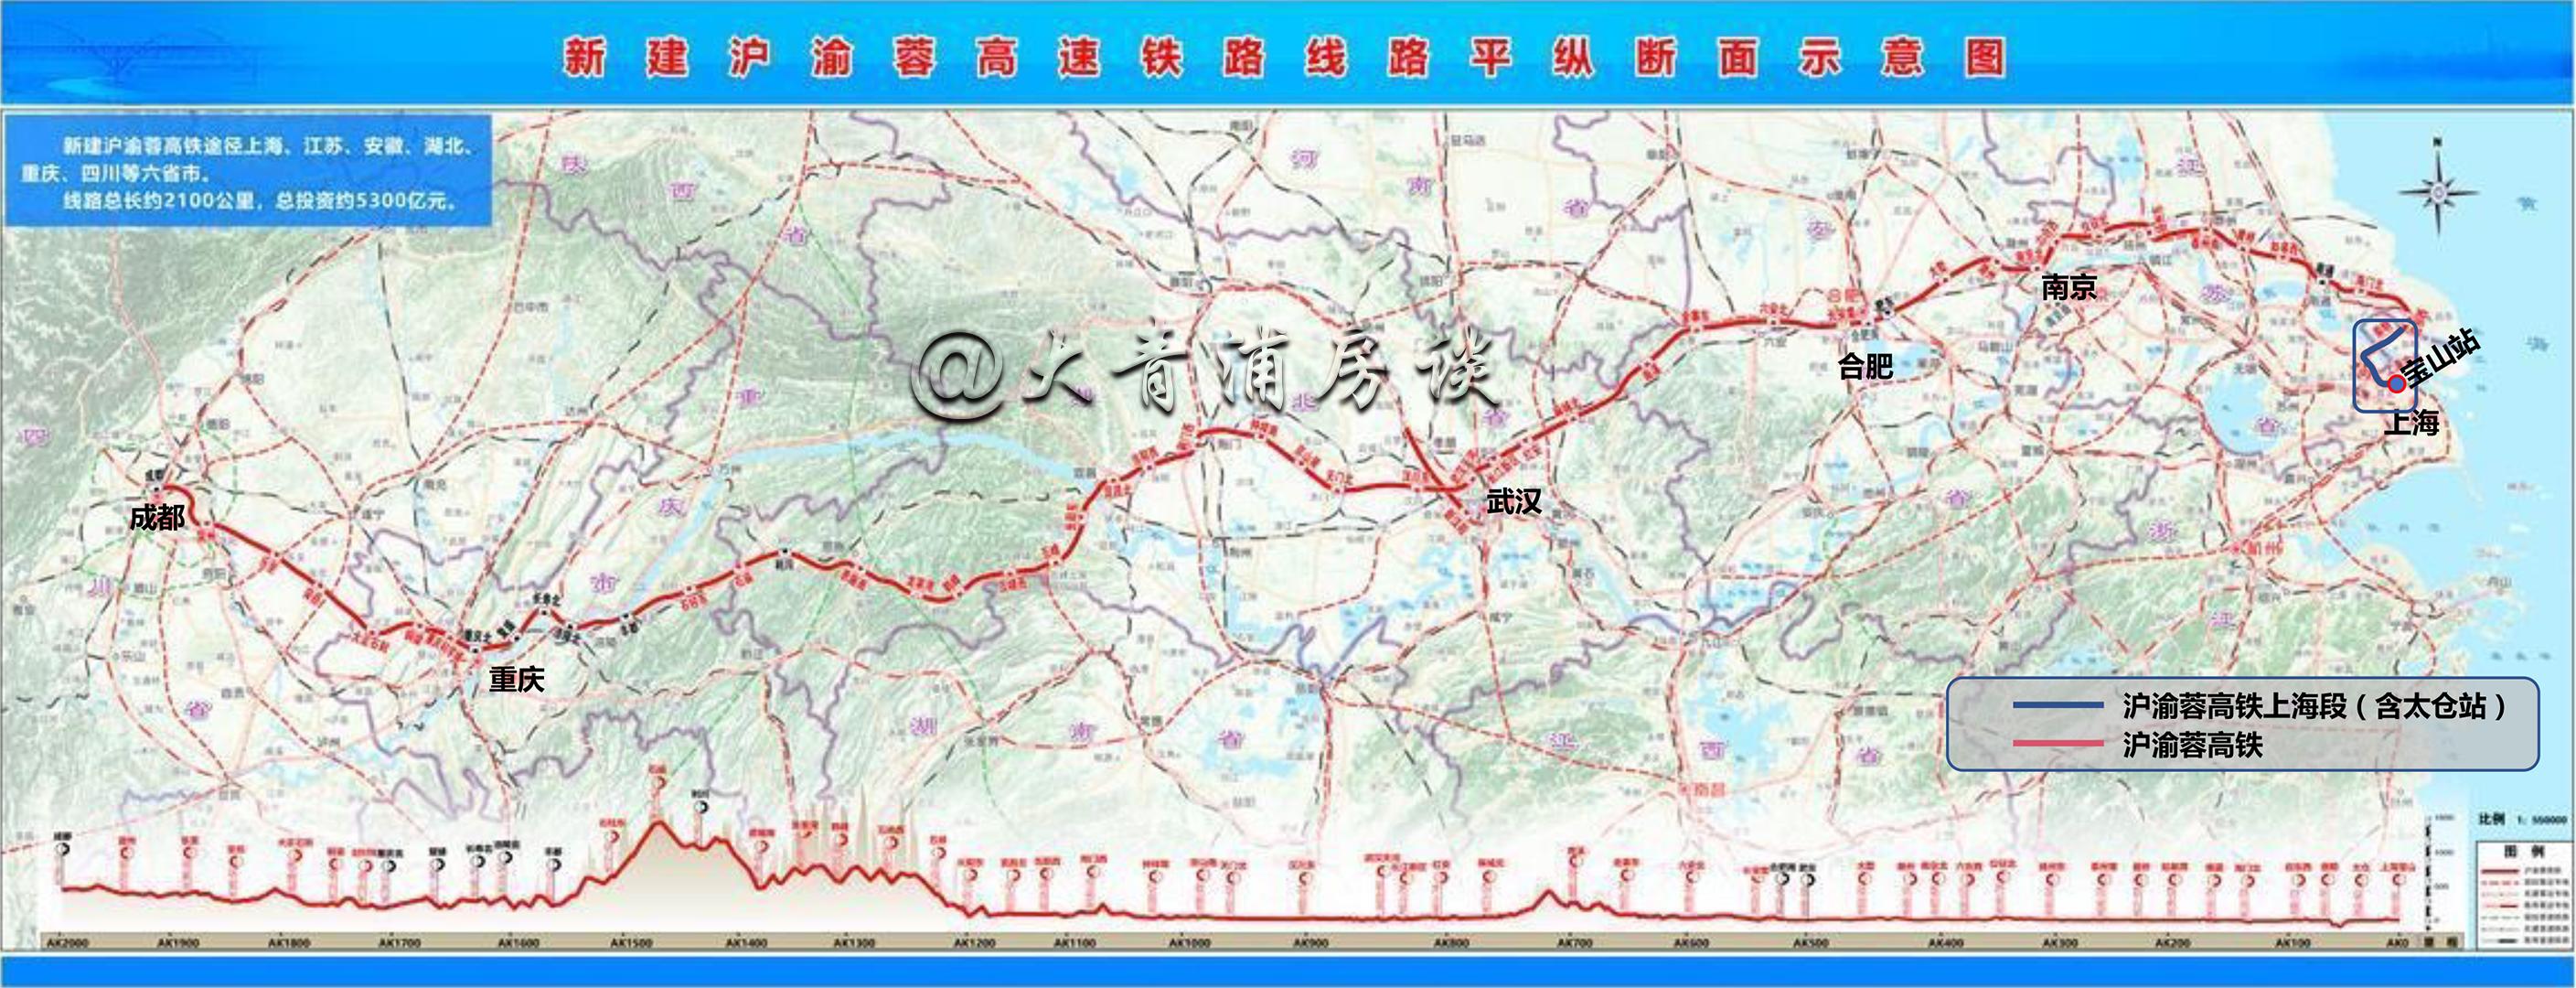 《沪渝蓉高铁(上海段)选线专项规划调整 (草案公示)》发布